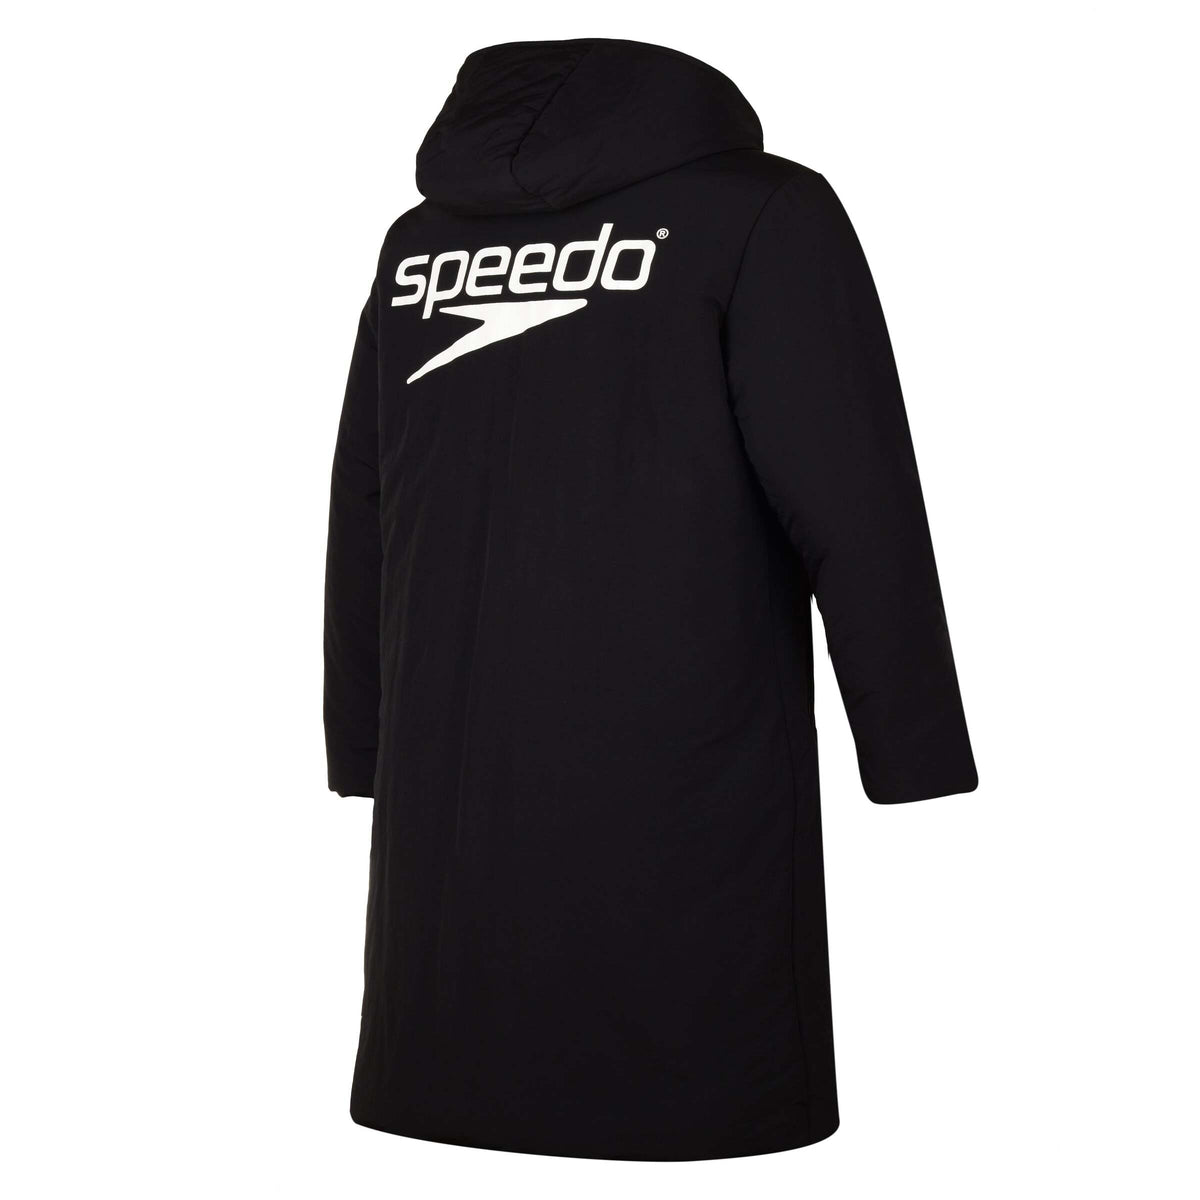 Speedo Adult Padded Jacket